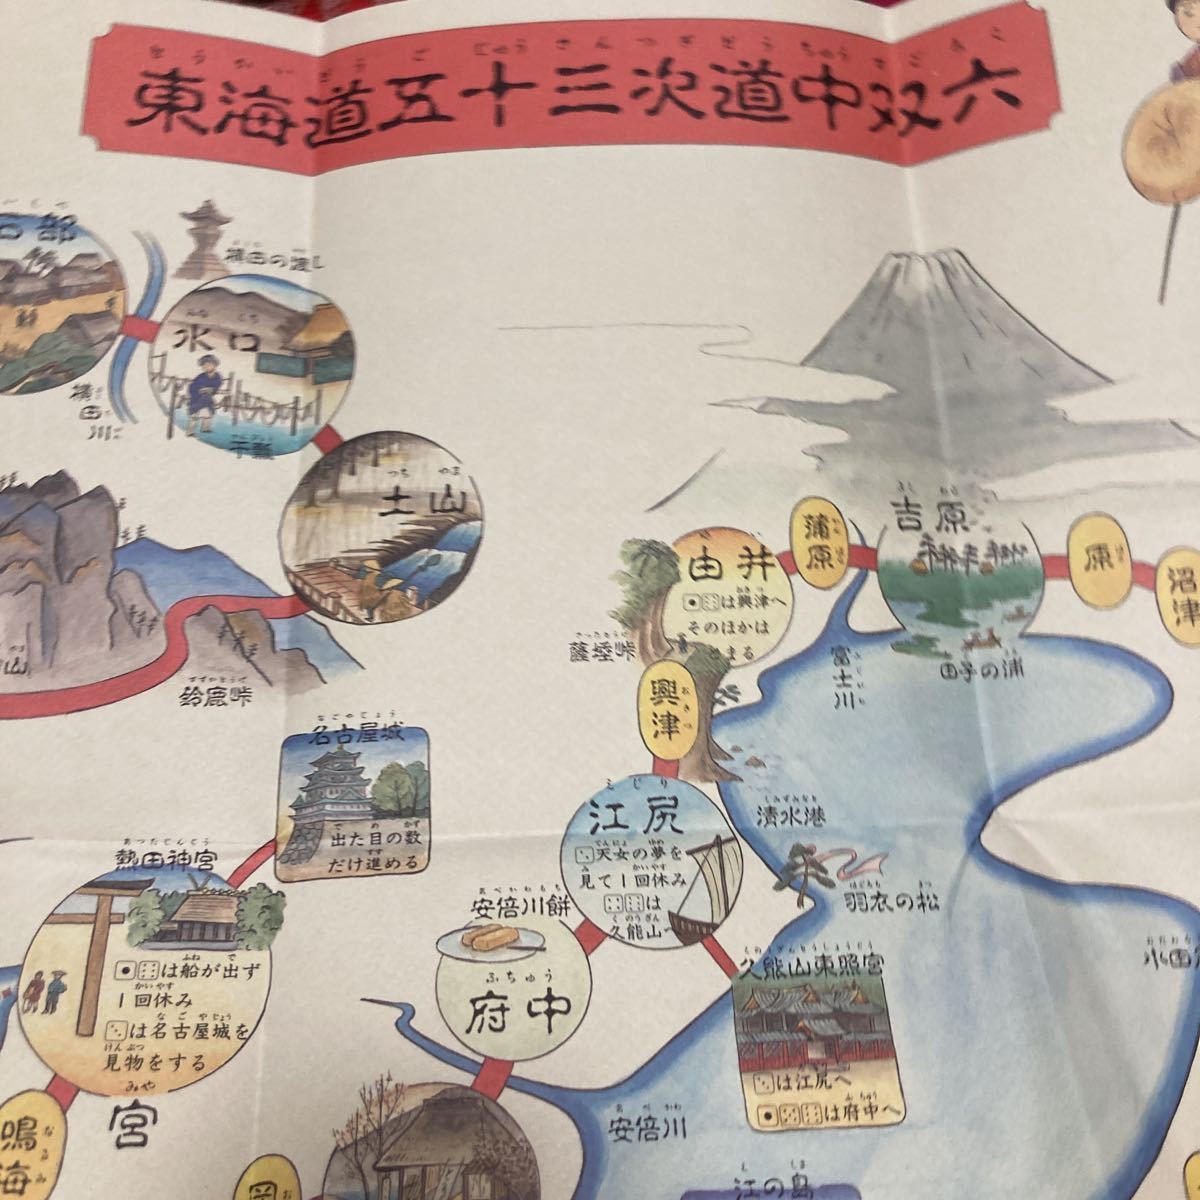 عنصر جديد وغير مستخدم، محطة توكايدو 53، Dochu Sugoroku، نشرها متحف مدينة أوتسو للتاريخ, تلوين, أوكييو إي, مطبعة, صورة المكان الشهير